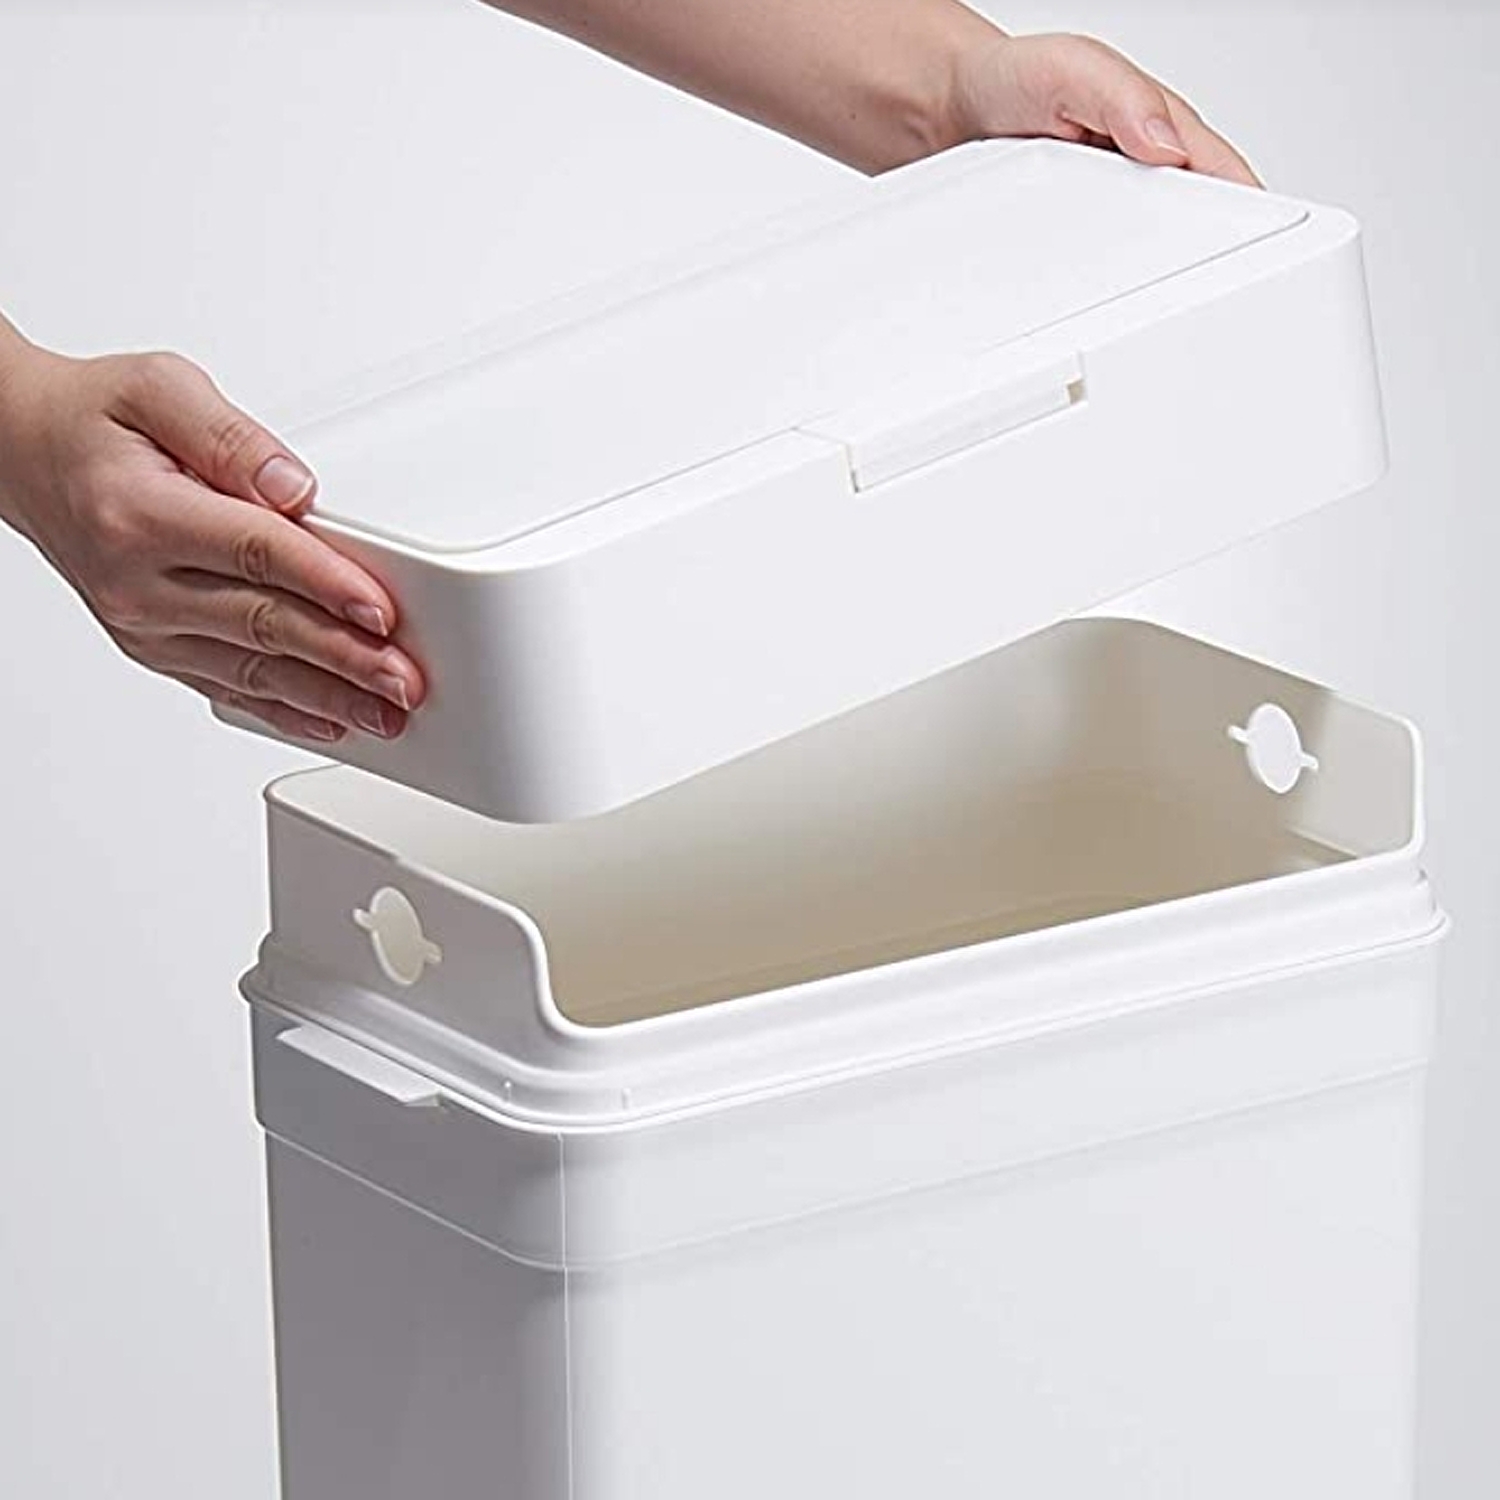 キッチン用ふた付きゴミ箱の選び方とおすすめ人気ランキング10選【おしゃれなスリムタイプも】 | eny